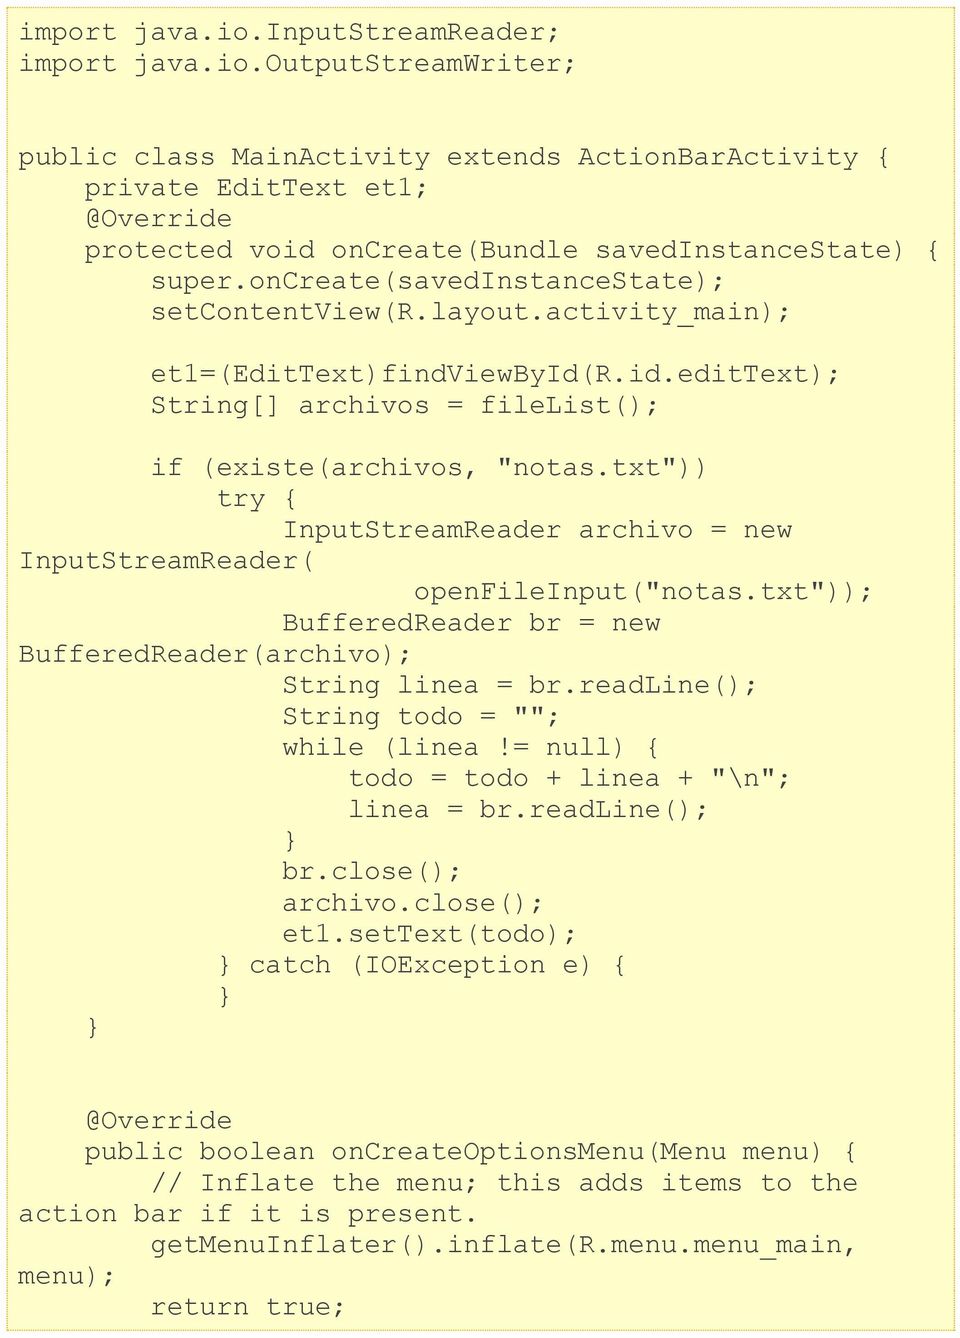 txt")) try { InputStreamReader archivo = new InputStreamReader( openfileinput("notas.txt")); BufferedReader br = new BufferedReader(archivo); String linea = br.